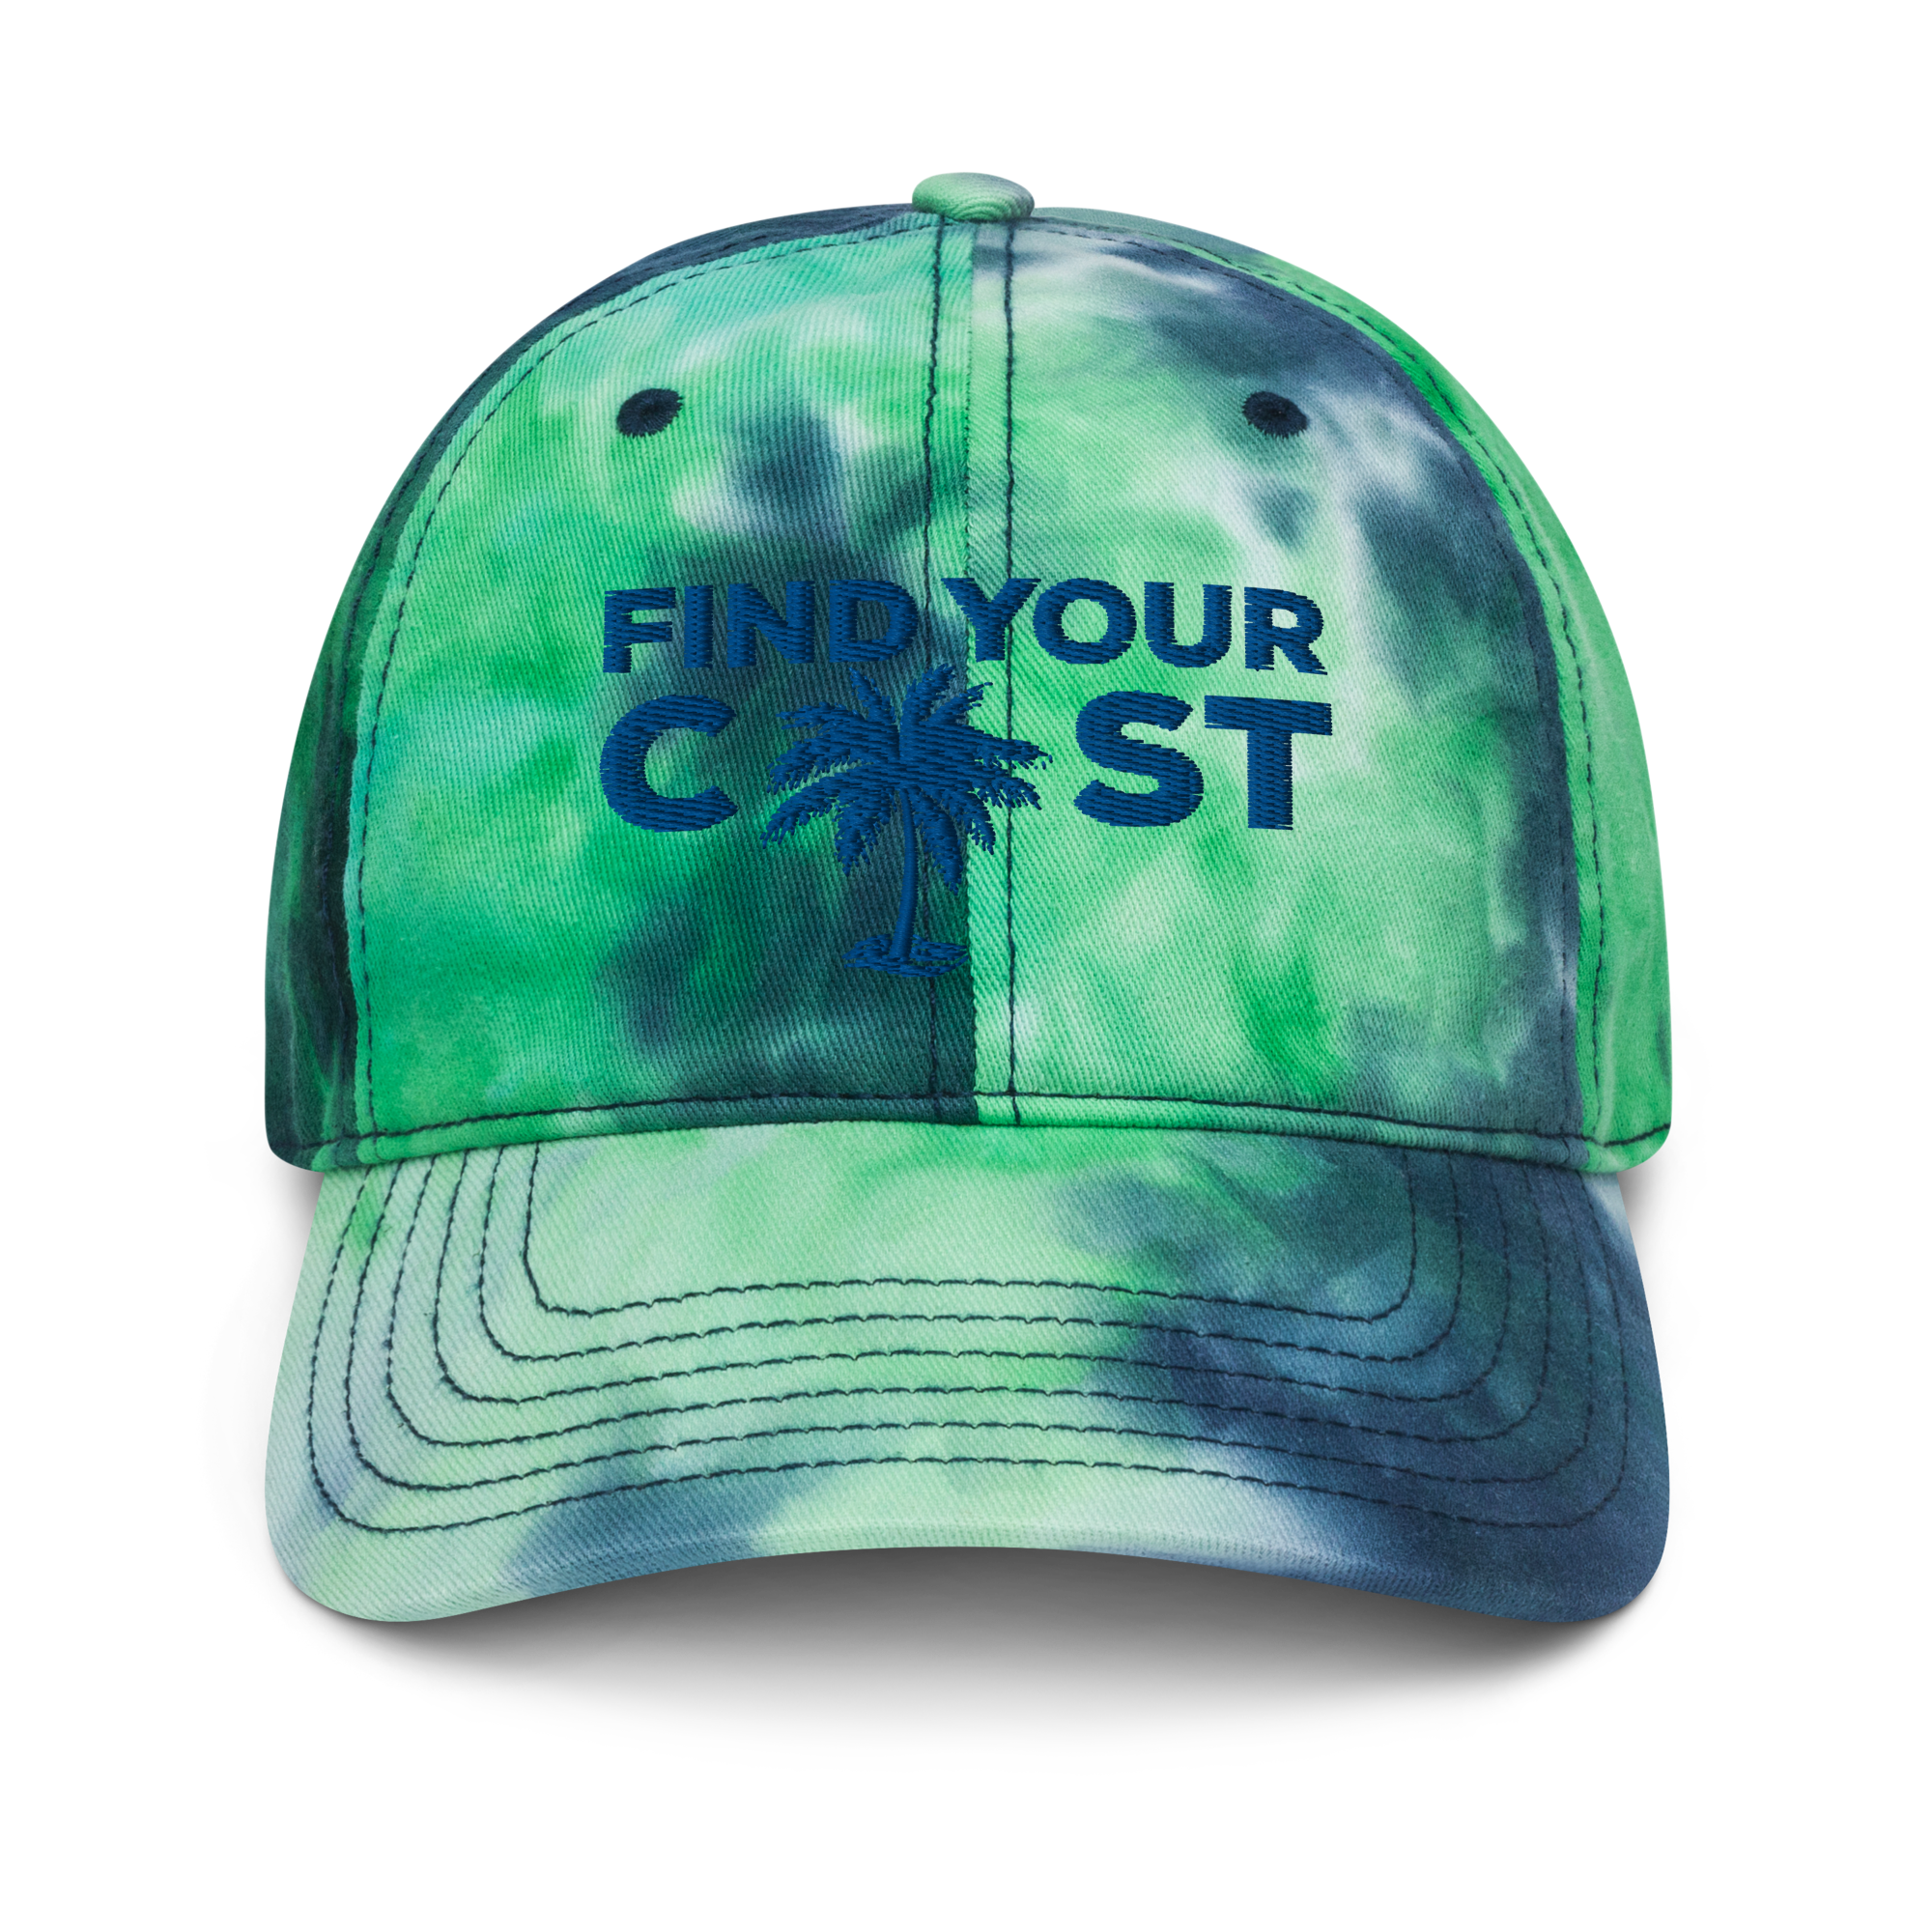 Find Your Coast Summer Tie Dye Hat